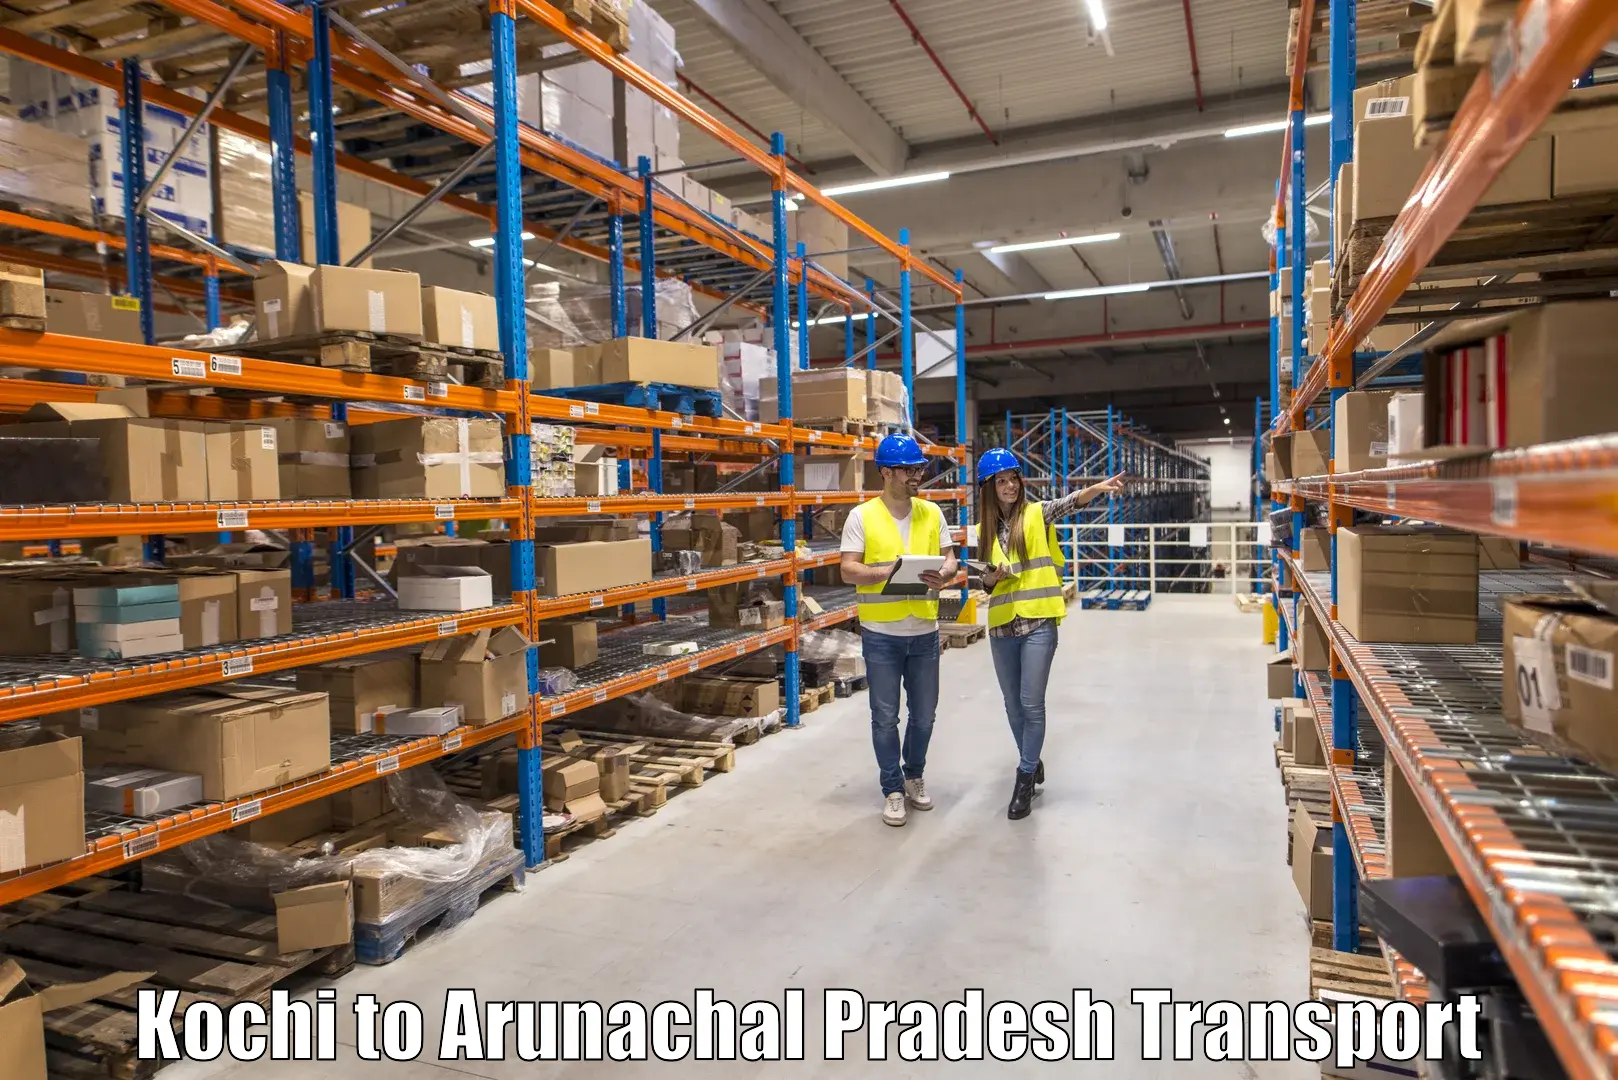 Transport shared services Kochi to Arunachal Pradesh